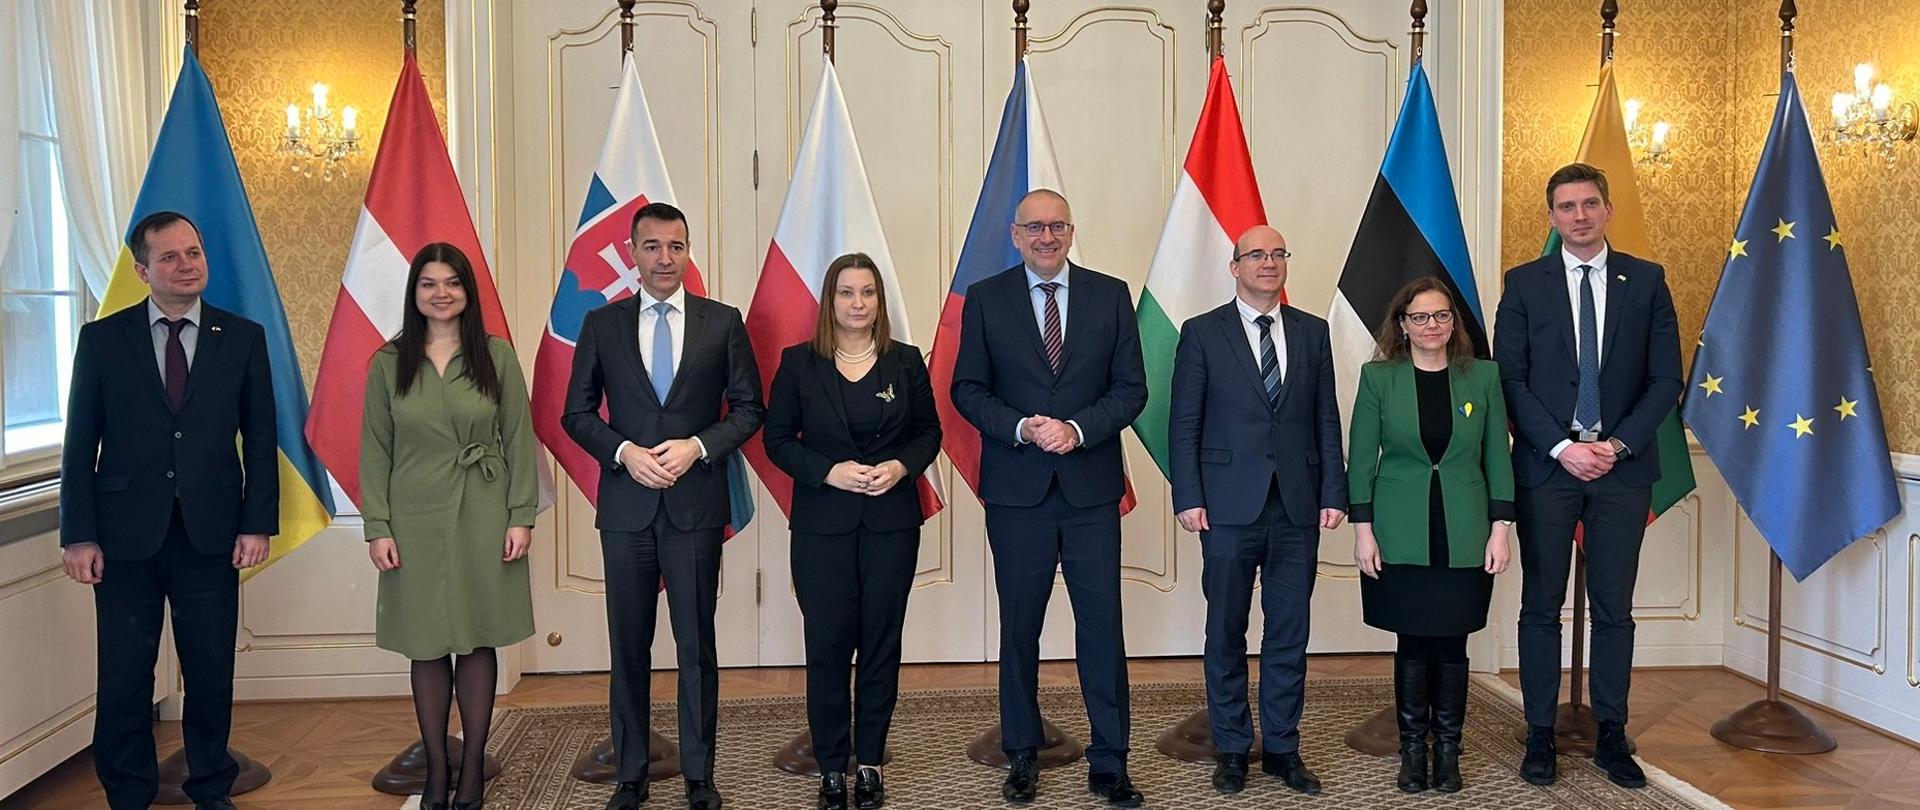 Jednání ministrů školství zemí Visegrádské skupiny, Pobaltí a Ukrajiny